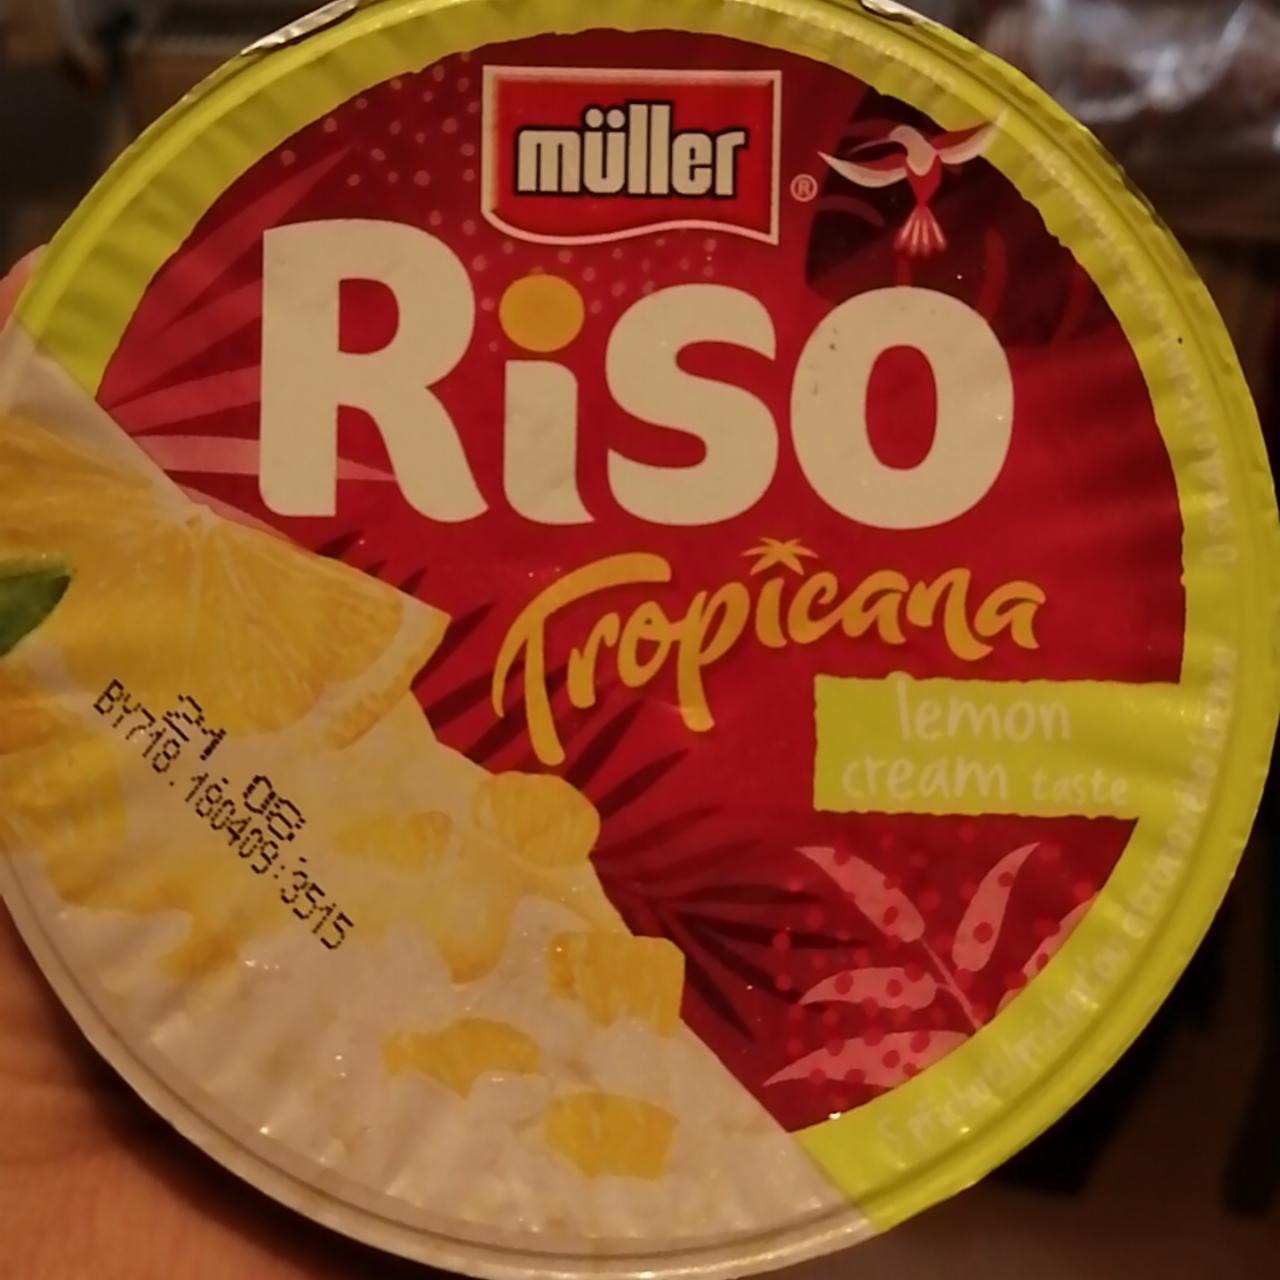 Fotografie - Riso Tropicana lemon cream taste Müller